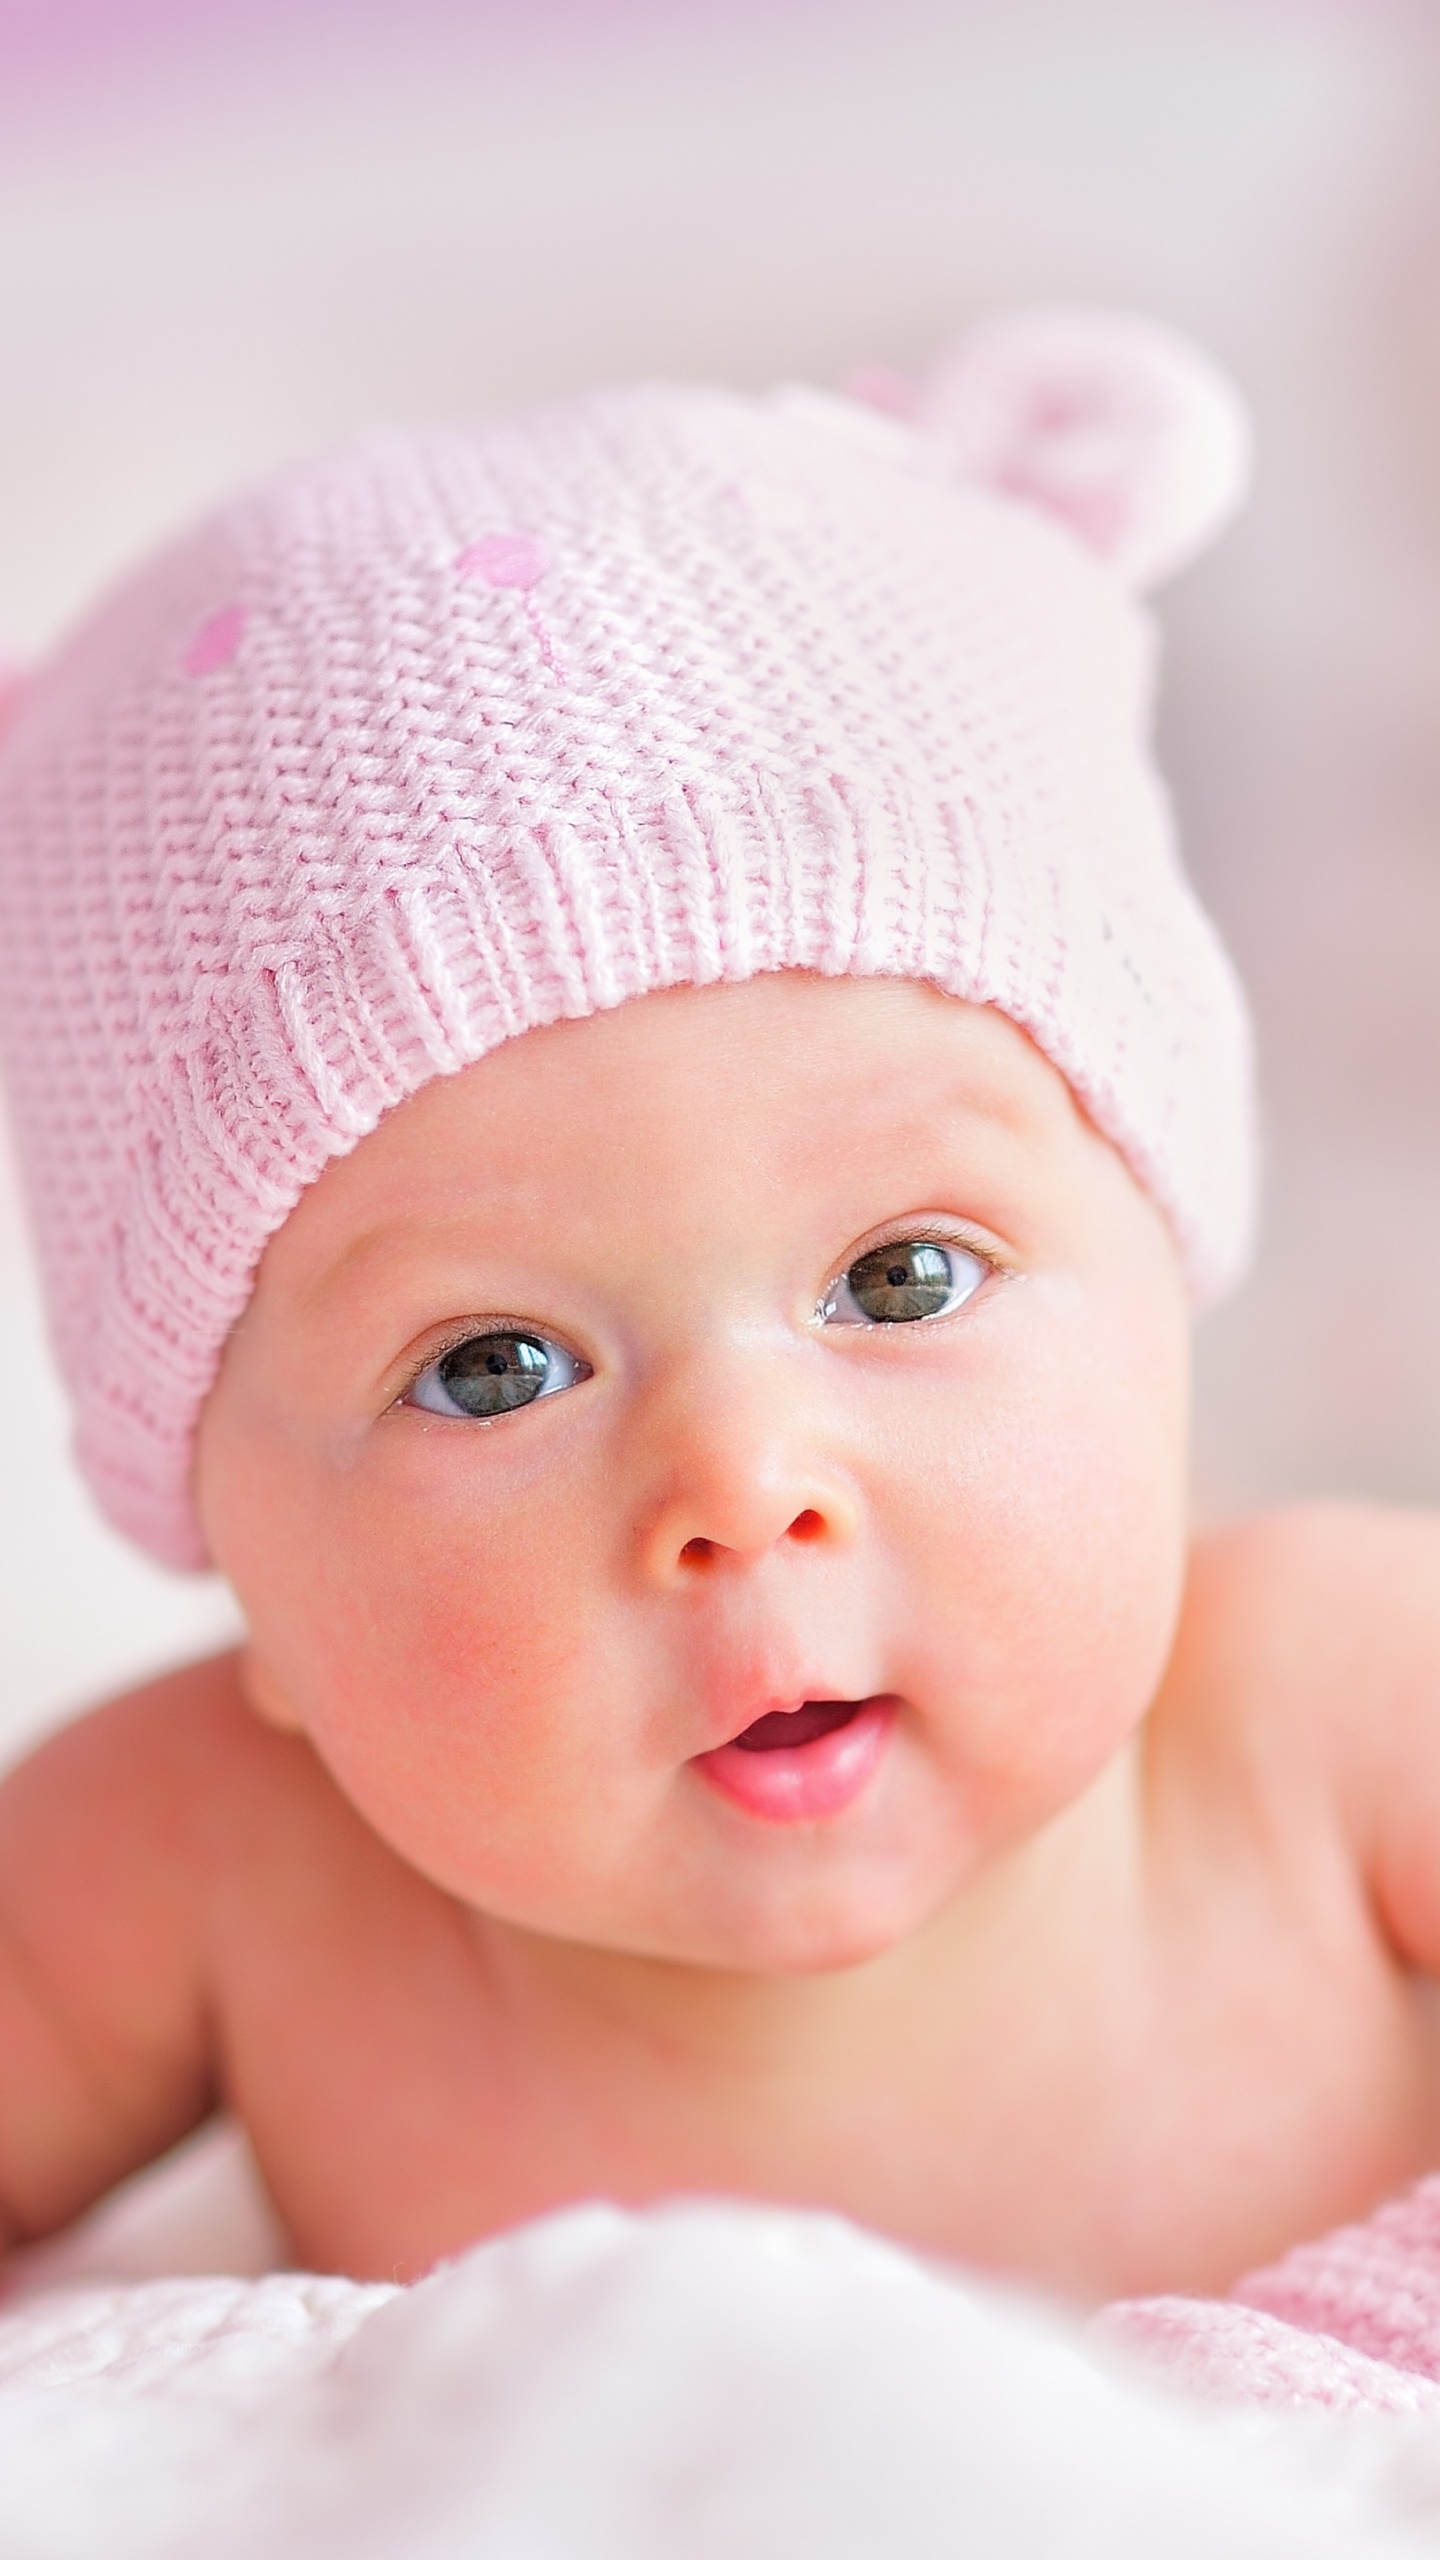 婴儿, 儿童, 粉红色, 皮肤, 女孩 壁纸 1440x2560 允许